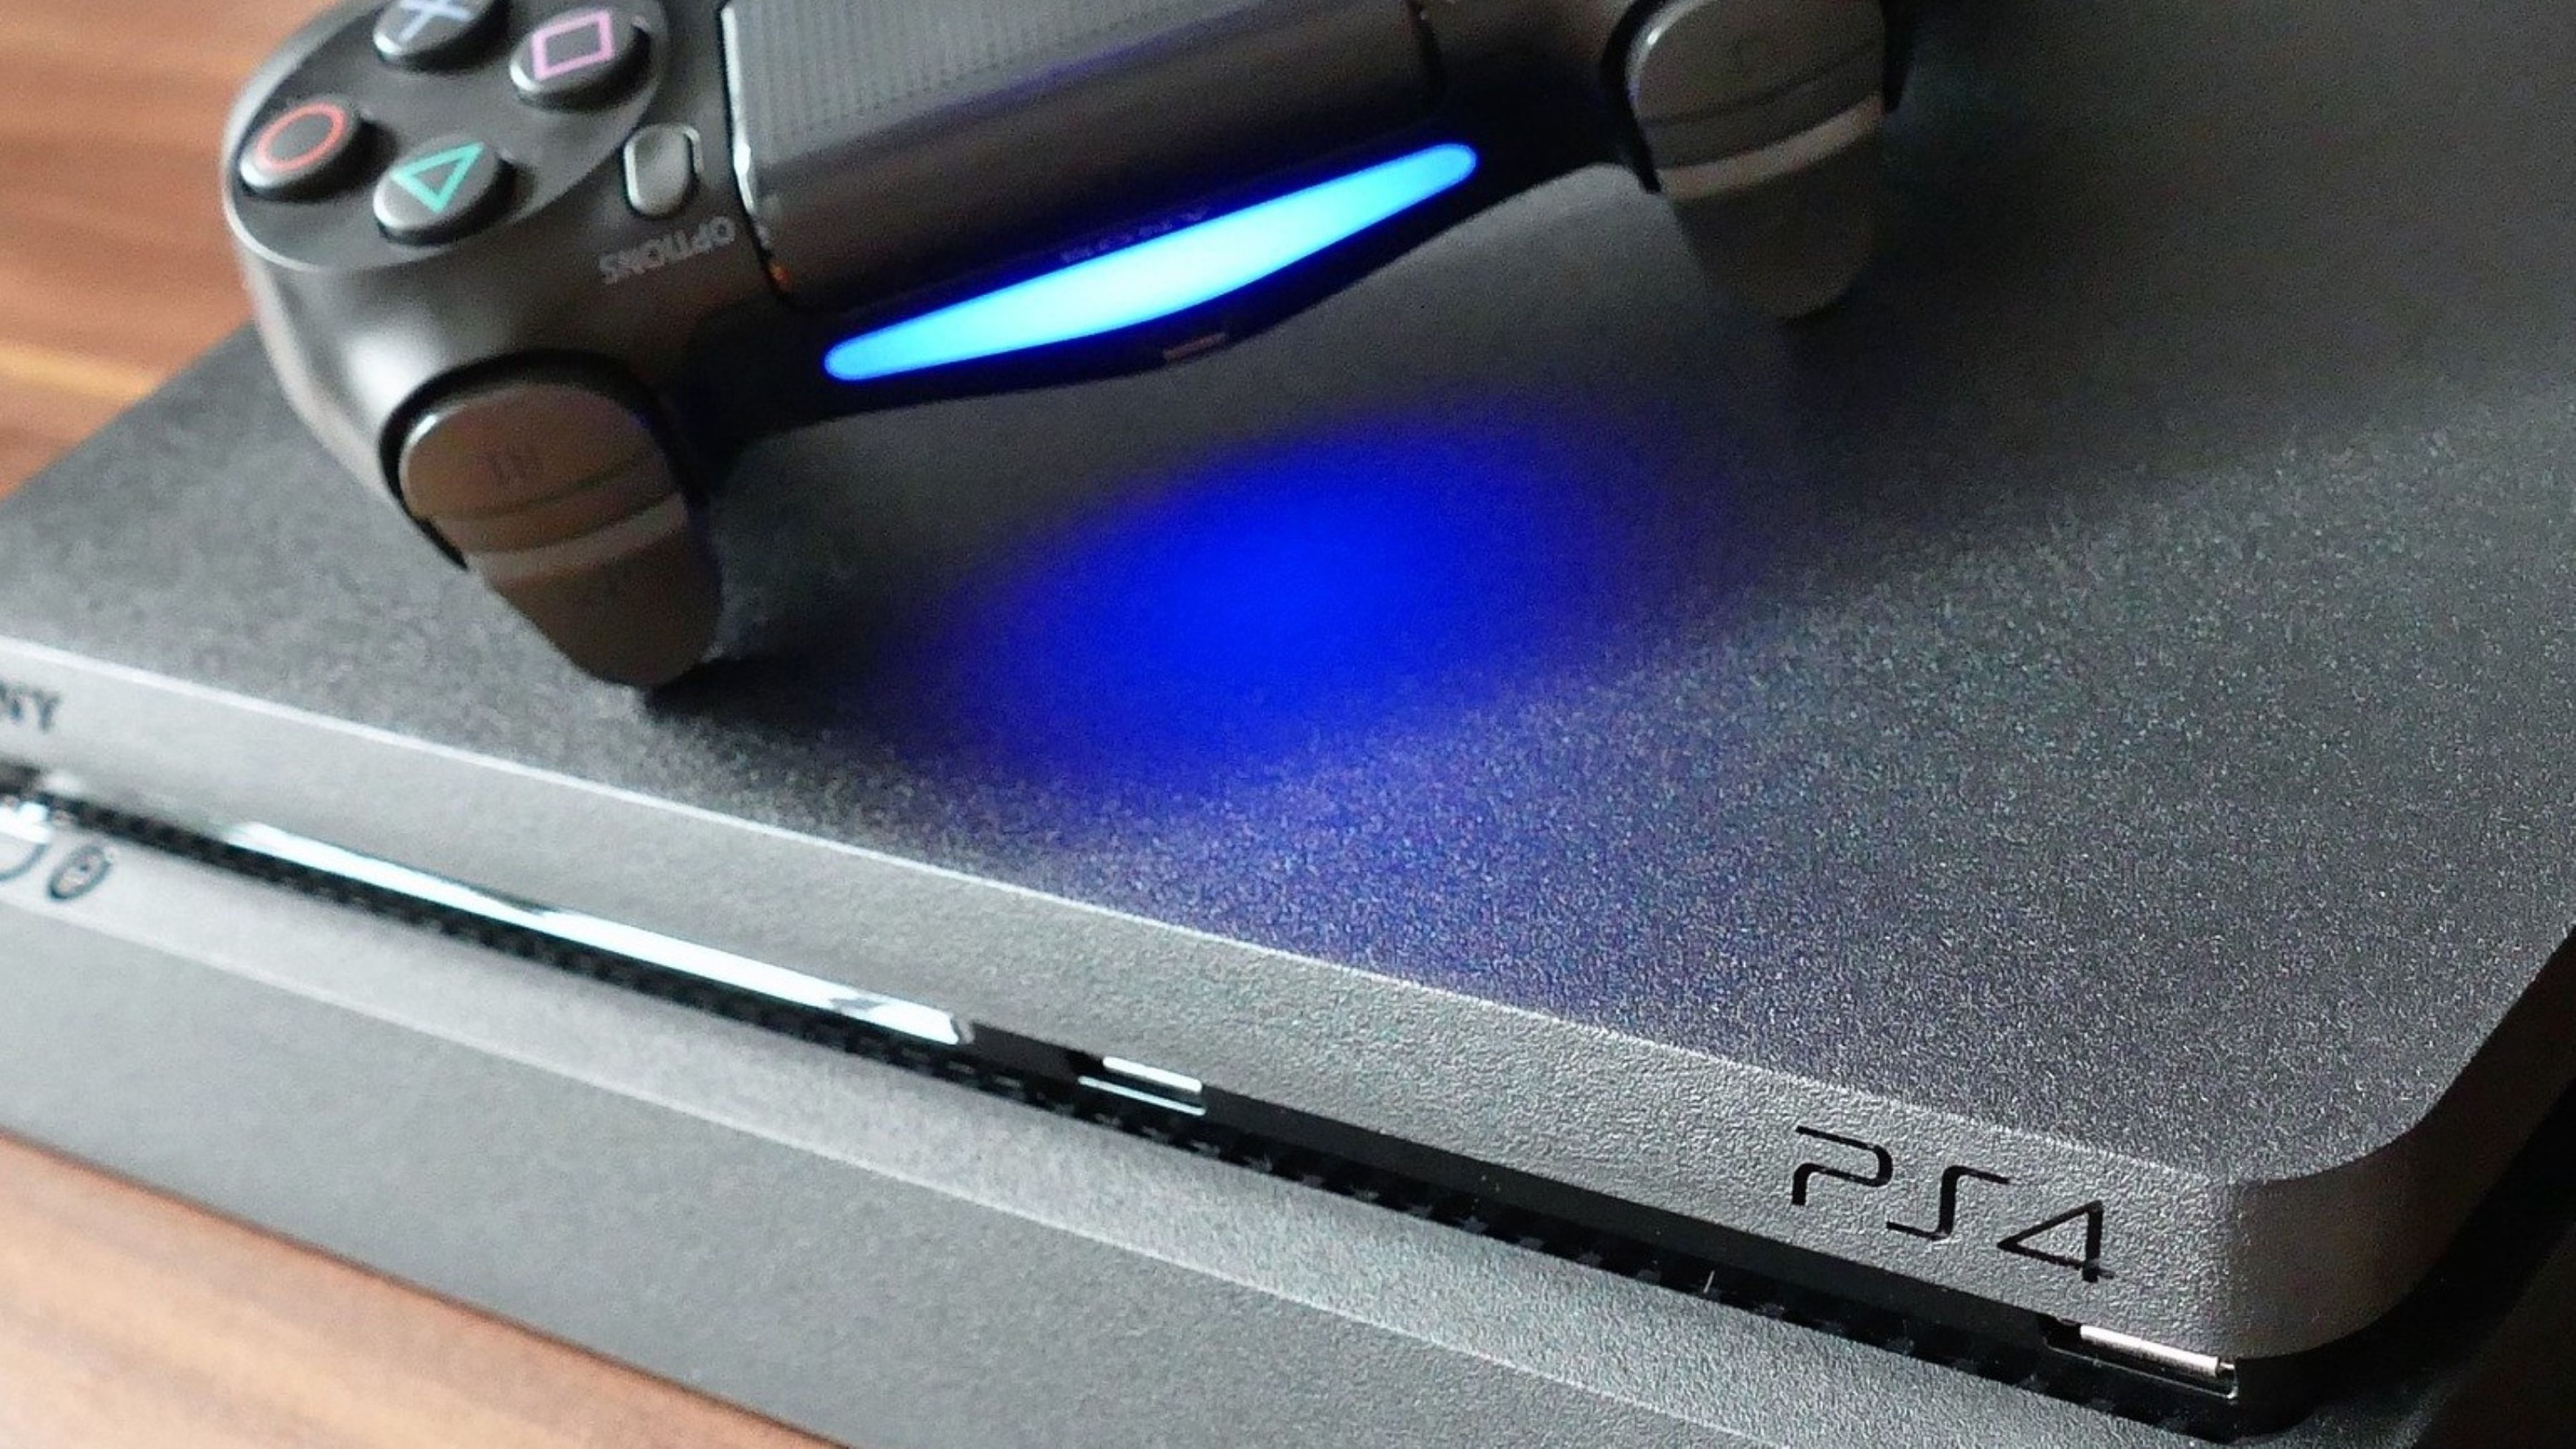 Sony reduce la cantidad de juegos que saldrán en PS4 y se concentra en PS5